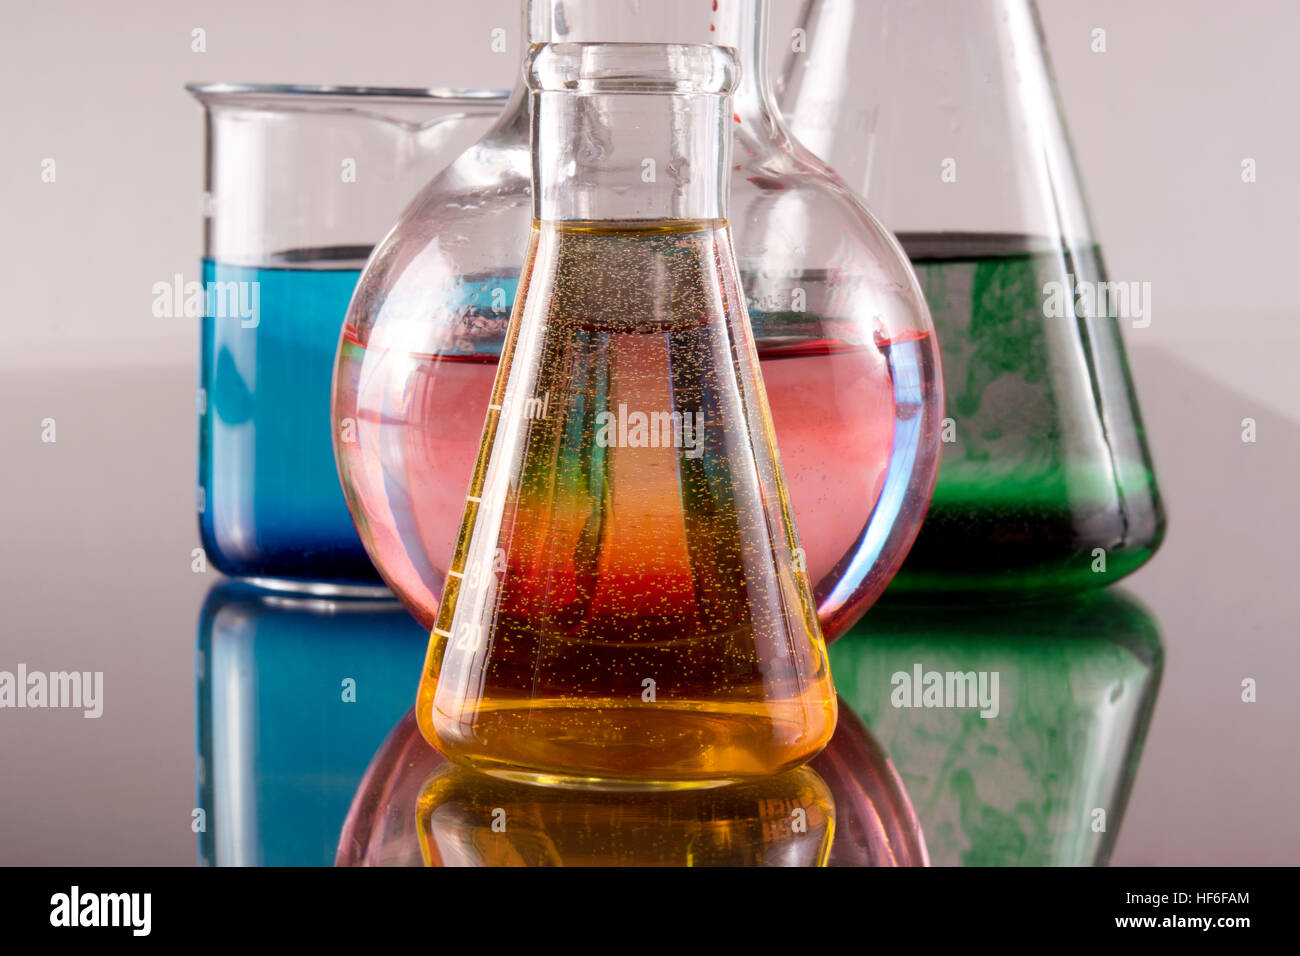 Résumé de chimie produits chimiques colorés et verrerie Banque D'Images